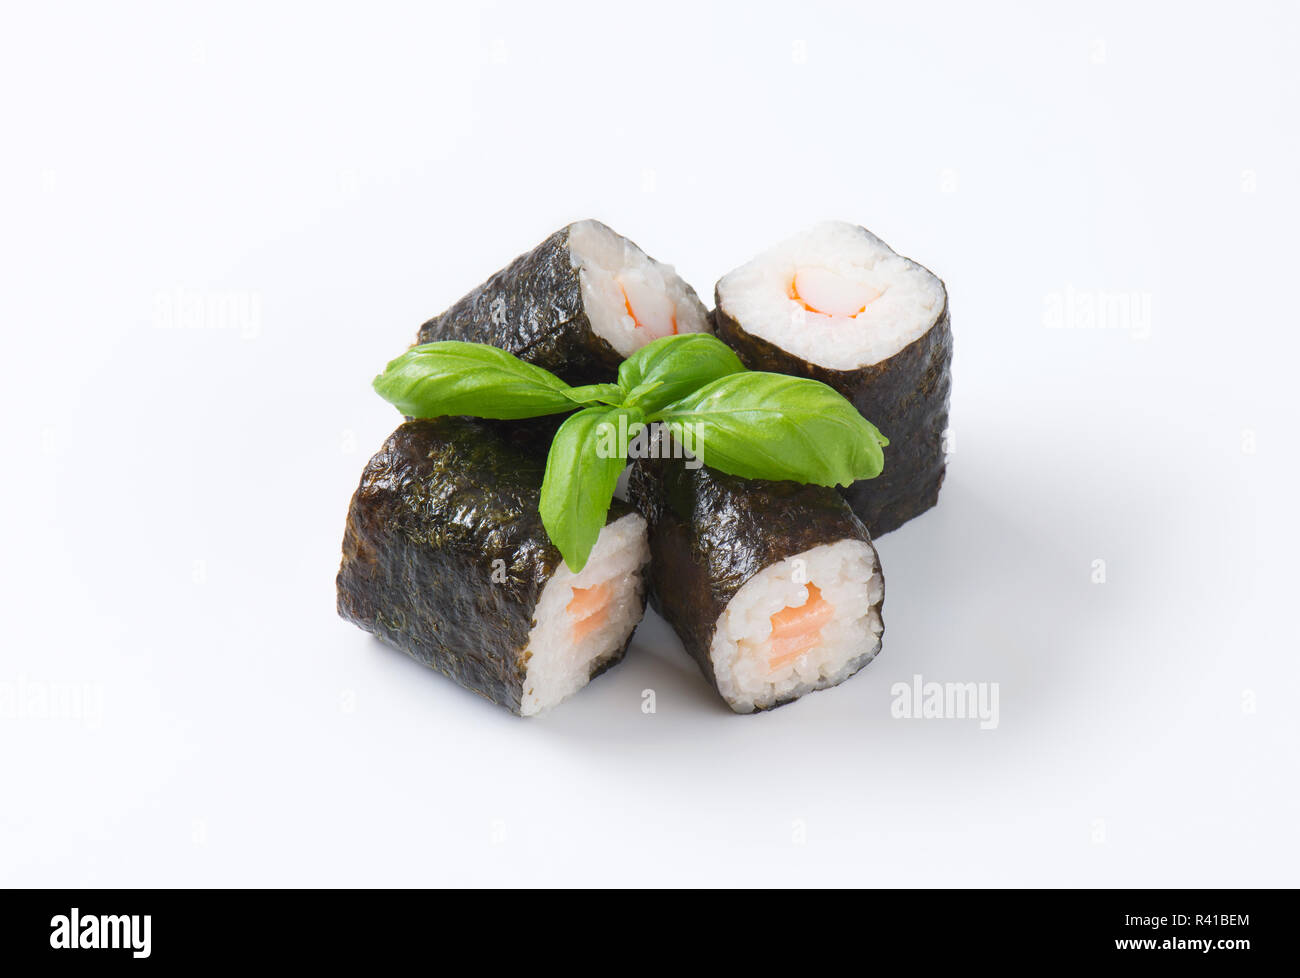 https://c8.alamy.com/comp/R41BEM/classic-sushi-rolls-R41BEM.jpg